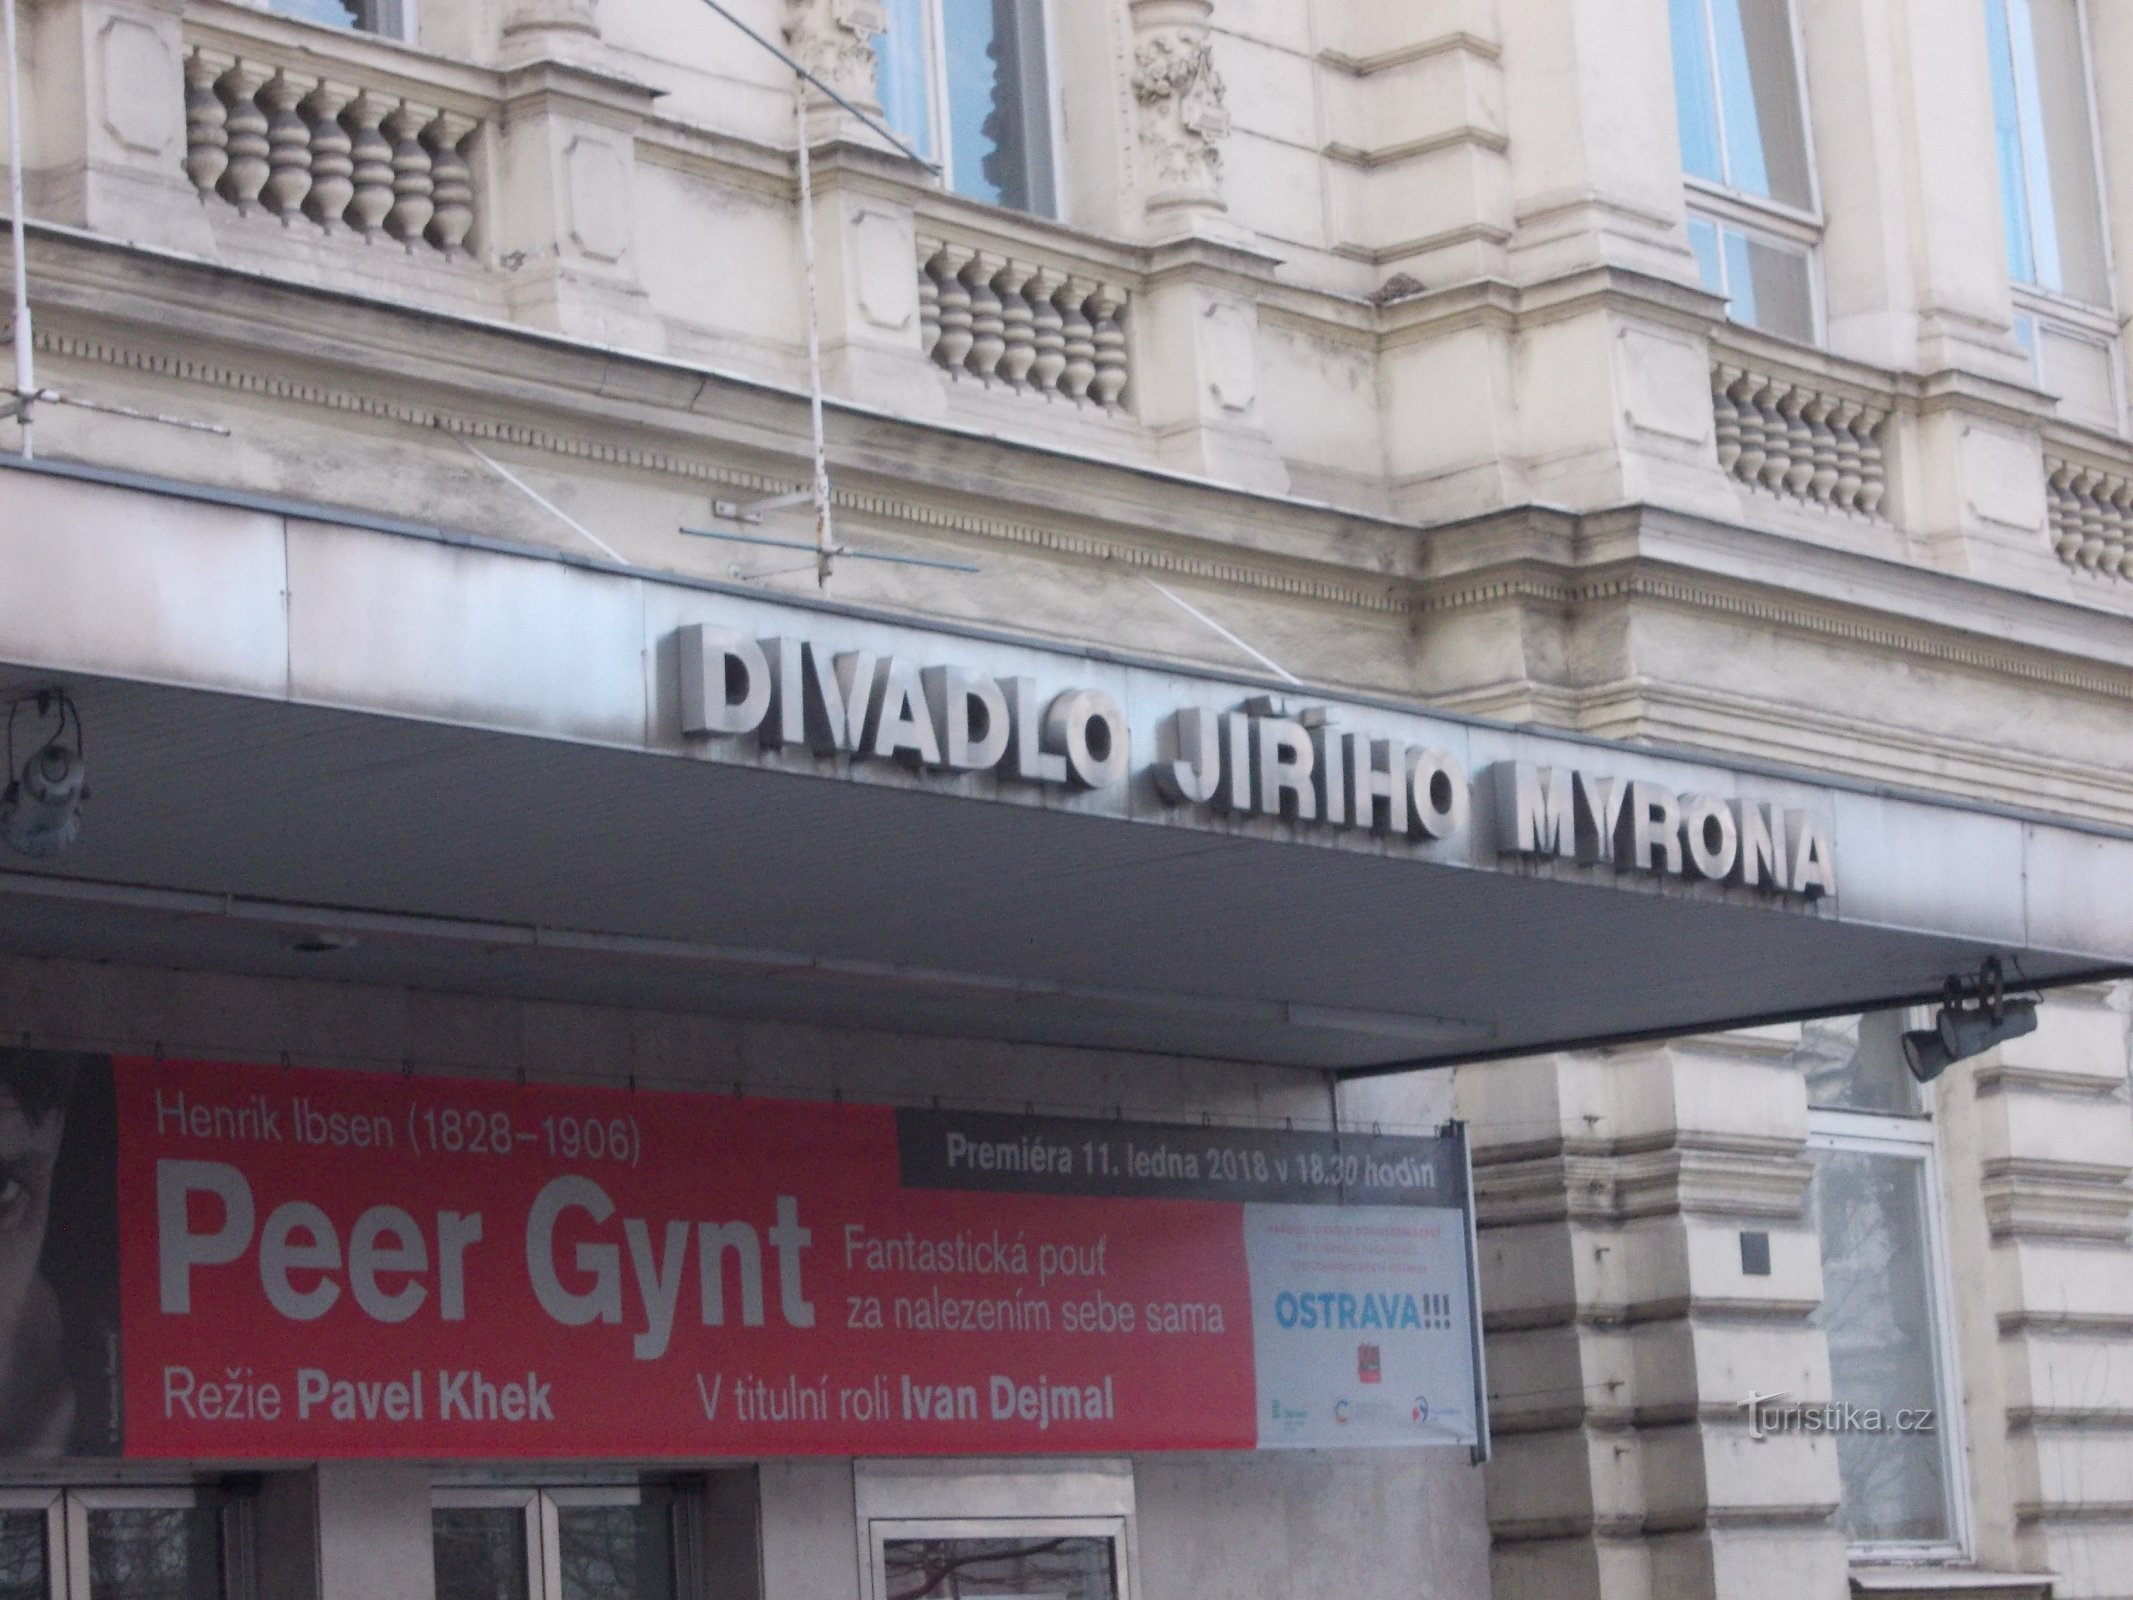 Jiří Myron 剧院从 19 世纪末开始经过多次翻修，直至今天